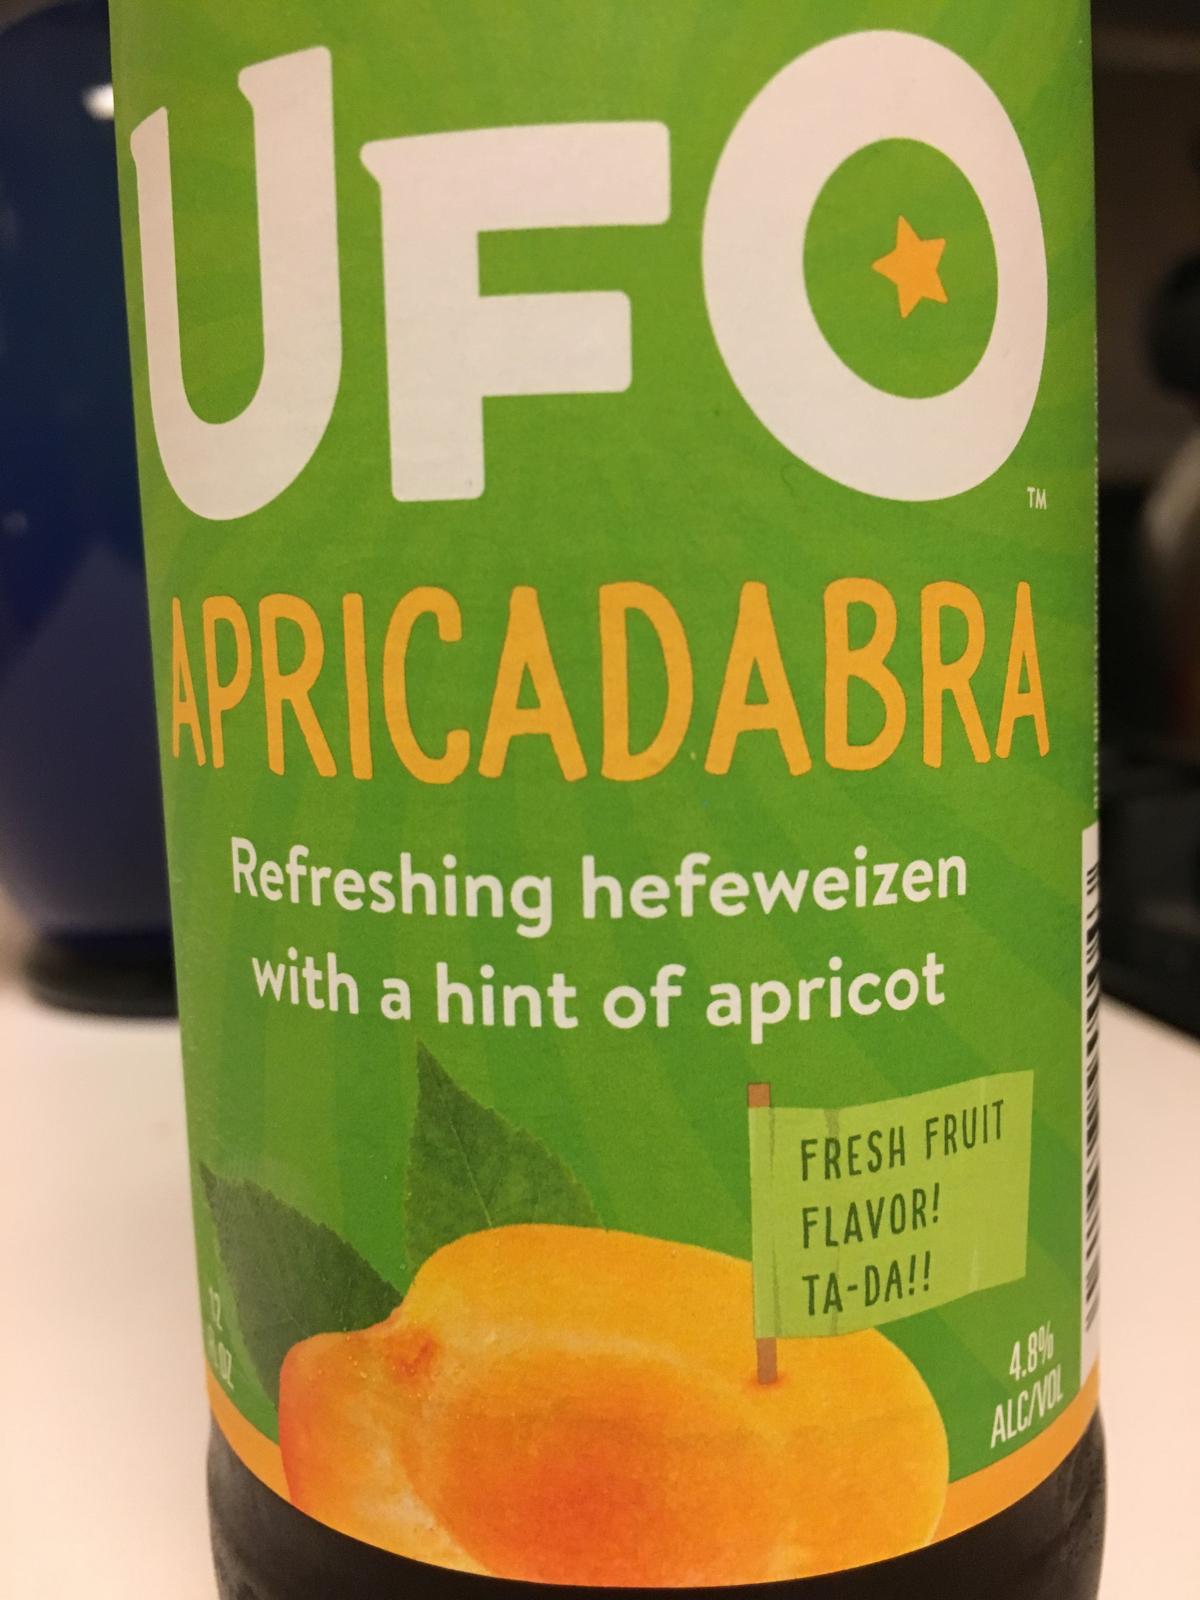 UFO Apricadabra